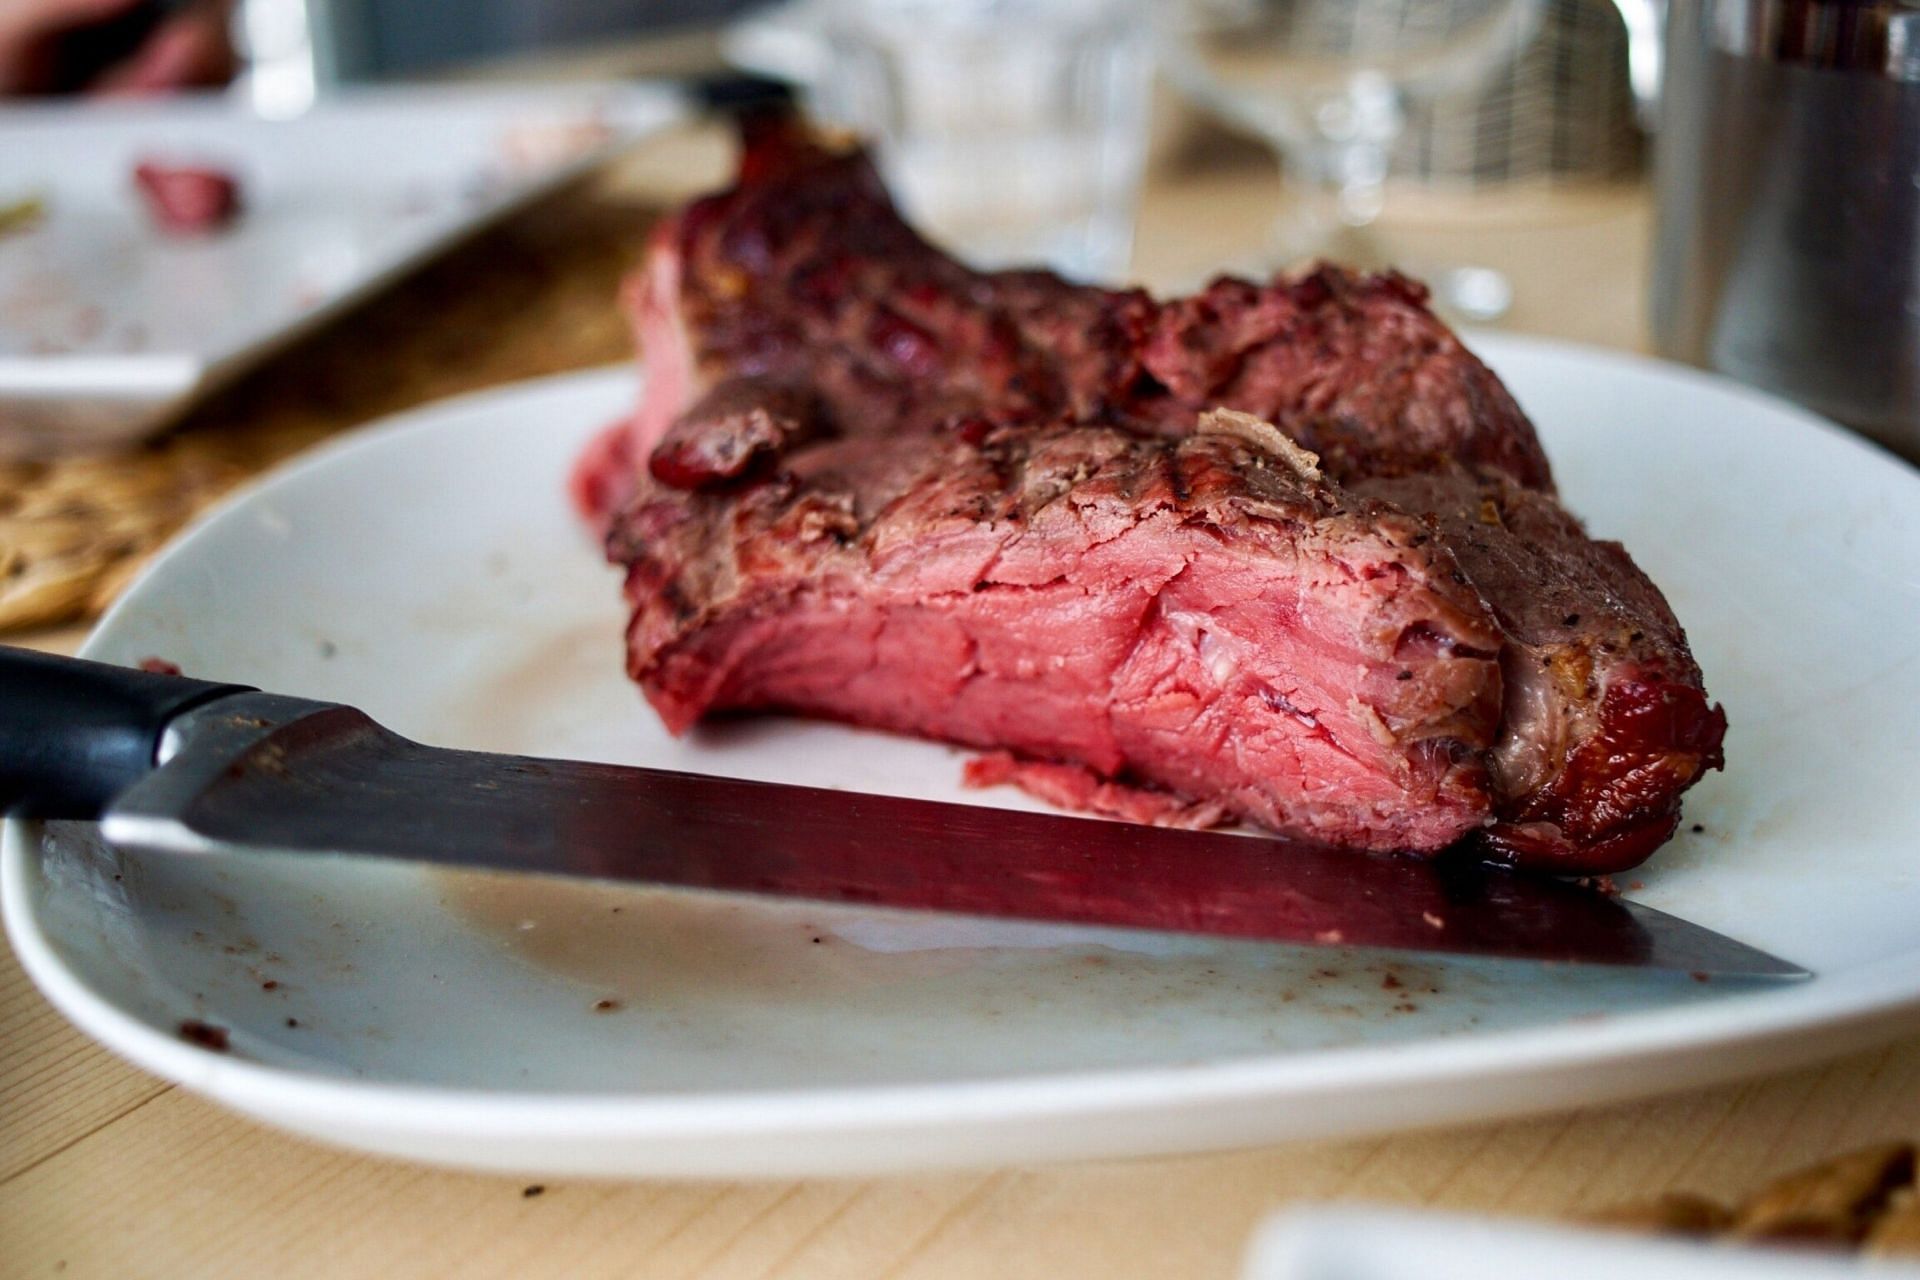 Meat is rich in vitamin B12. (Image via Unsplash/Sven Brandsma)